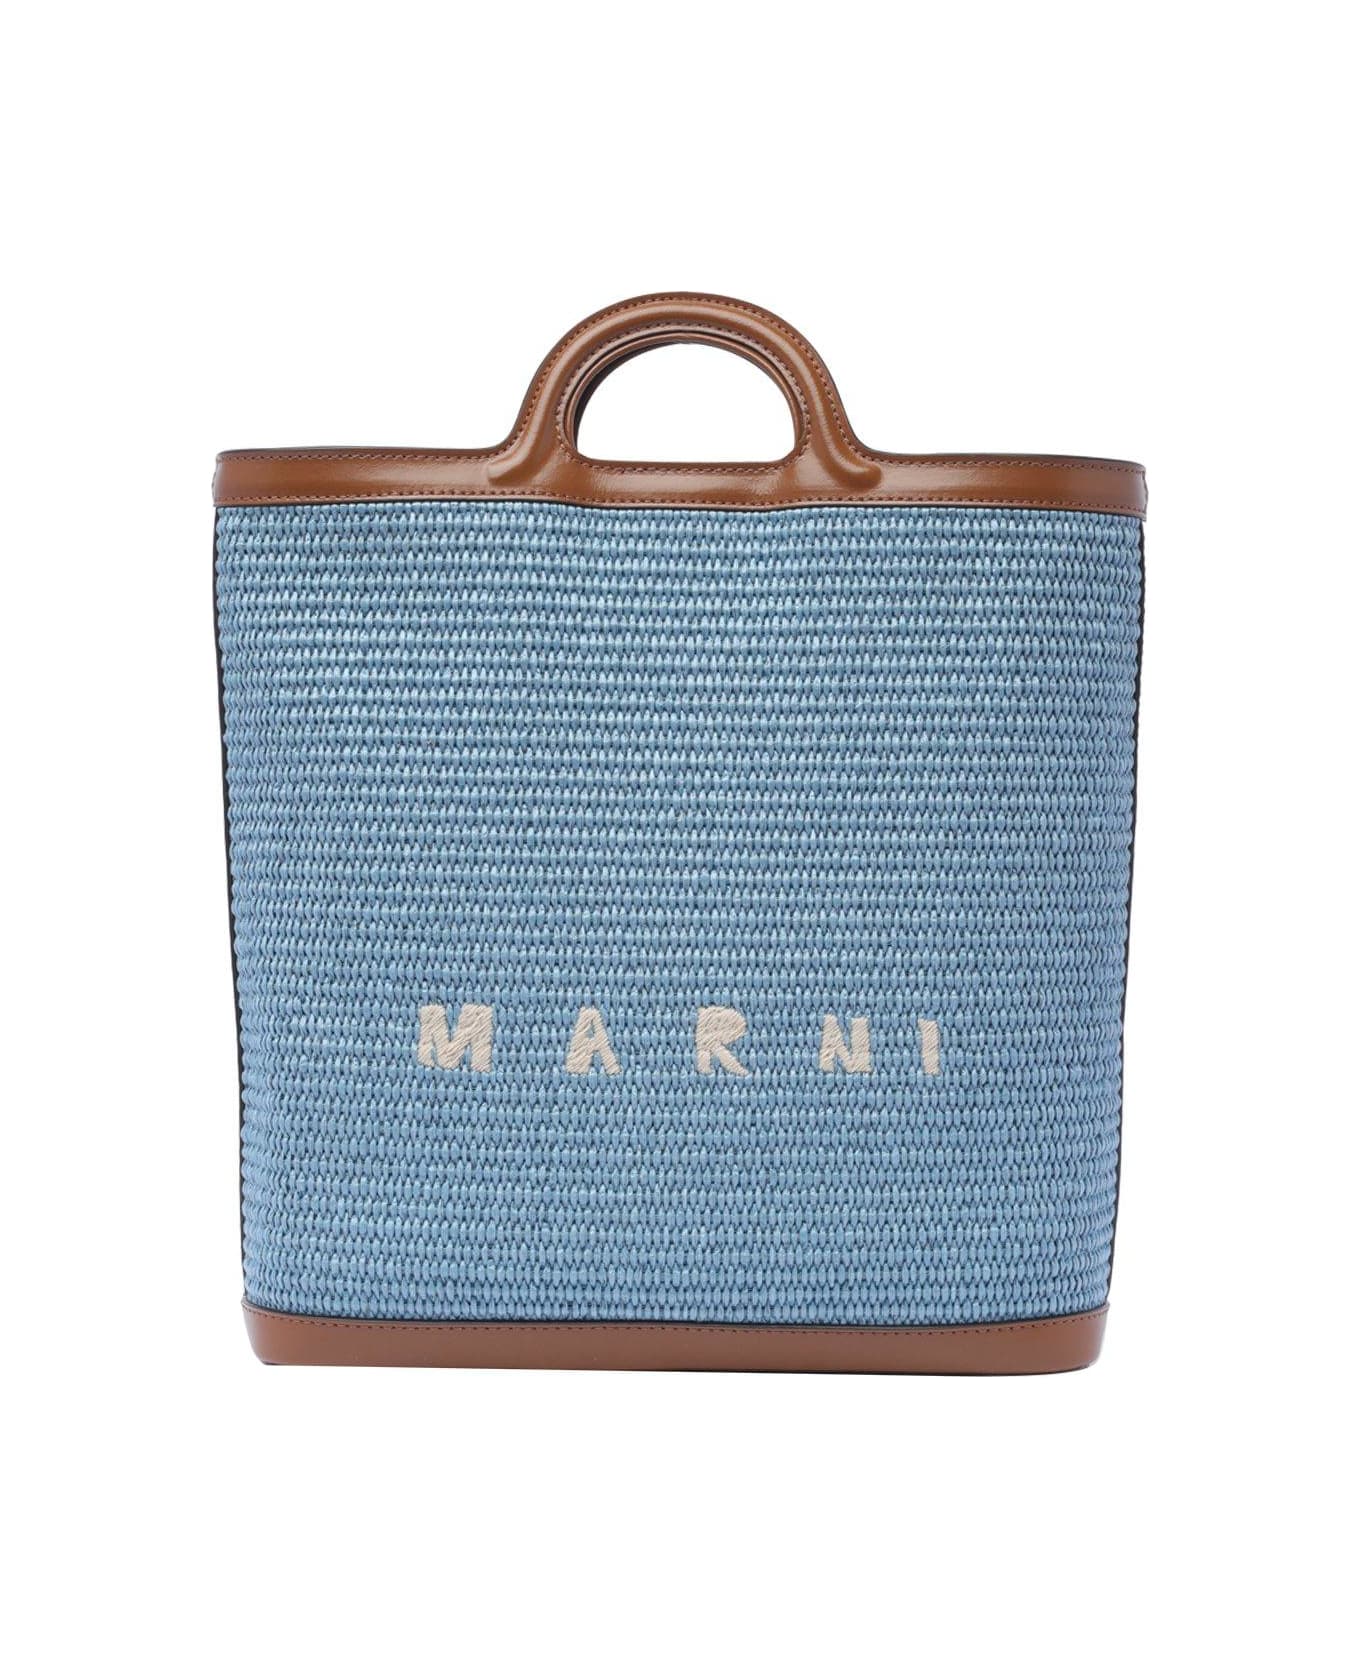 Marni Logo Embroidered Raffia Tote Bag - Nero